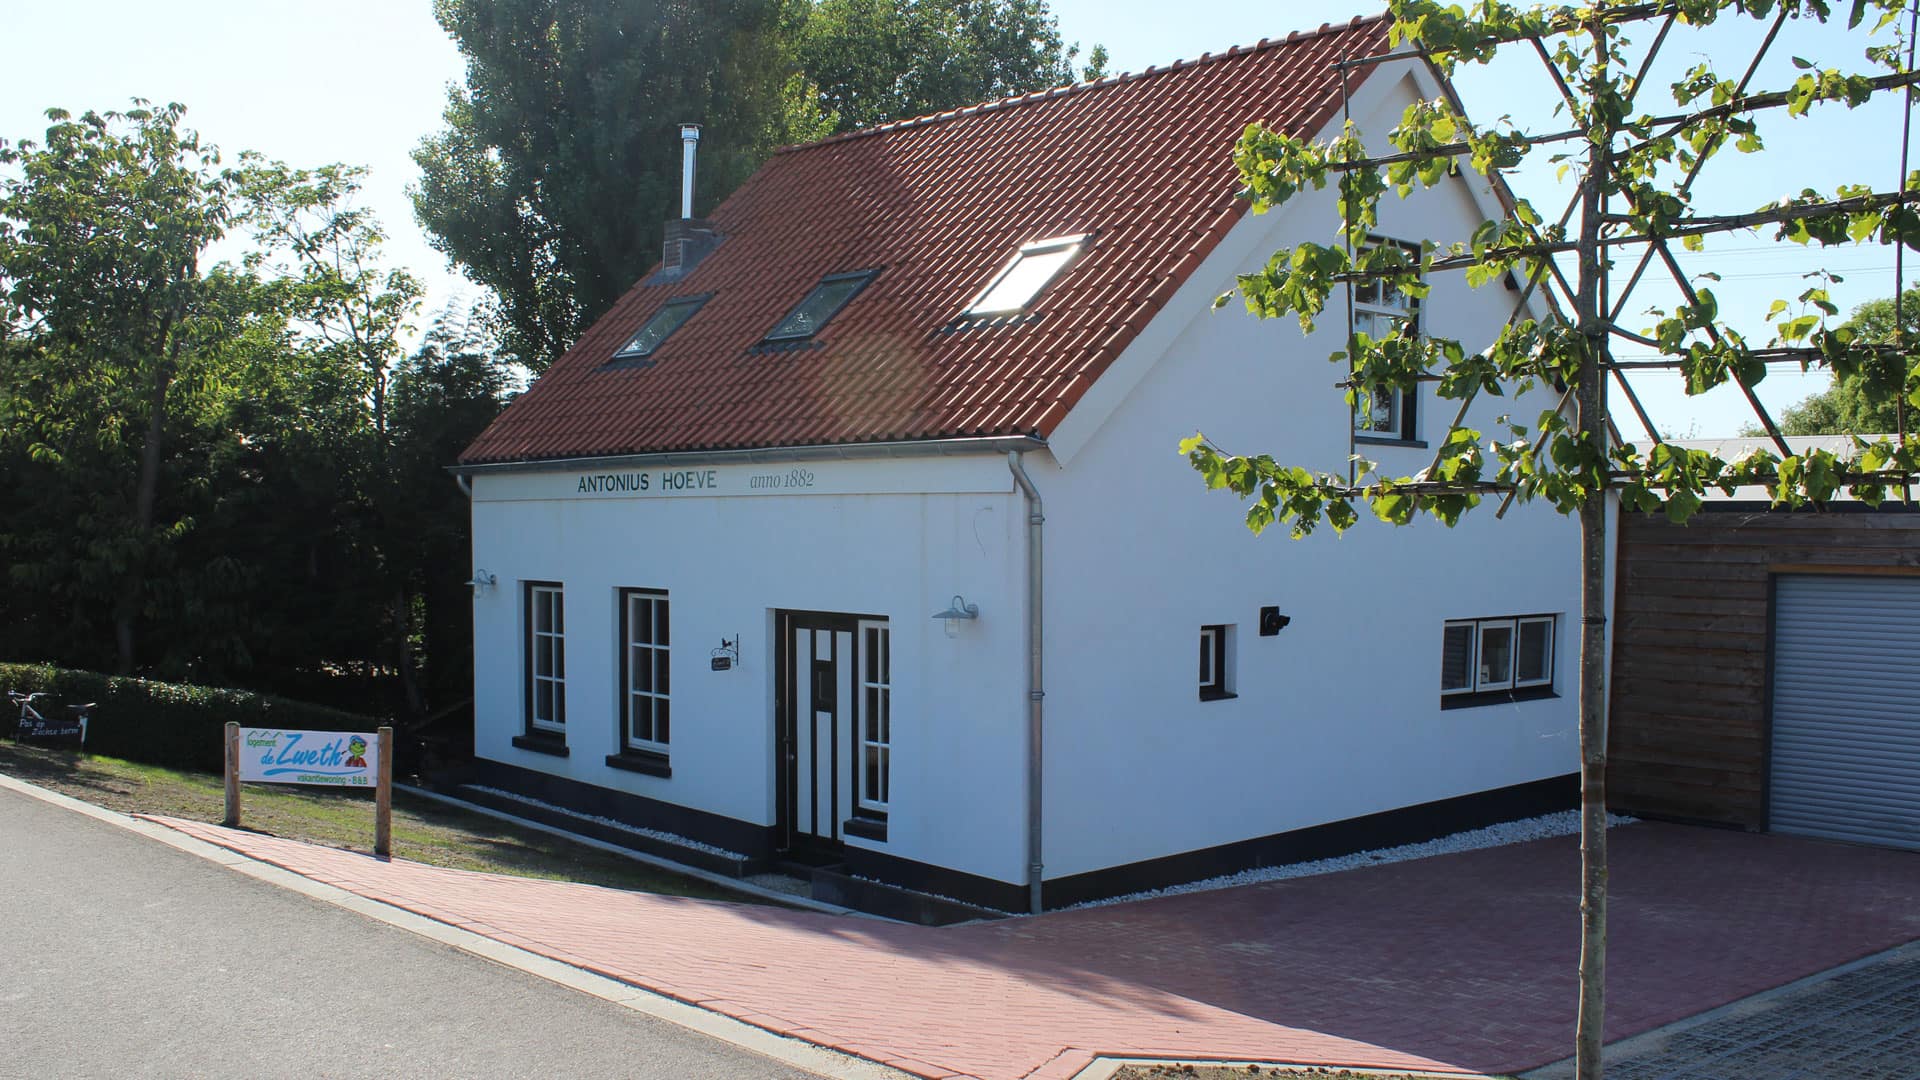 Vrijstaand wit vakantiehuisje met rood dak met de naam Antonius Hoeve onderaan de dijk bij Paviljoen de Zweth in het Westland